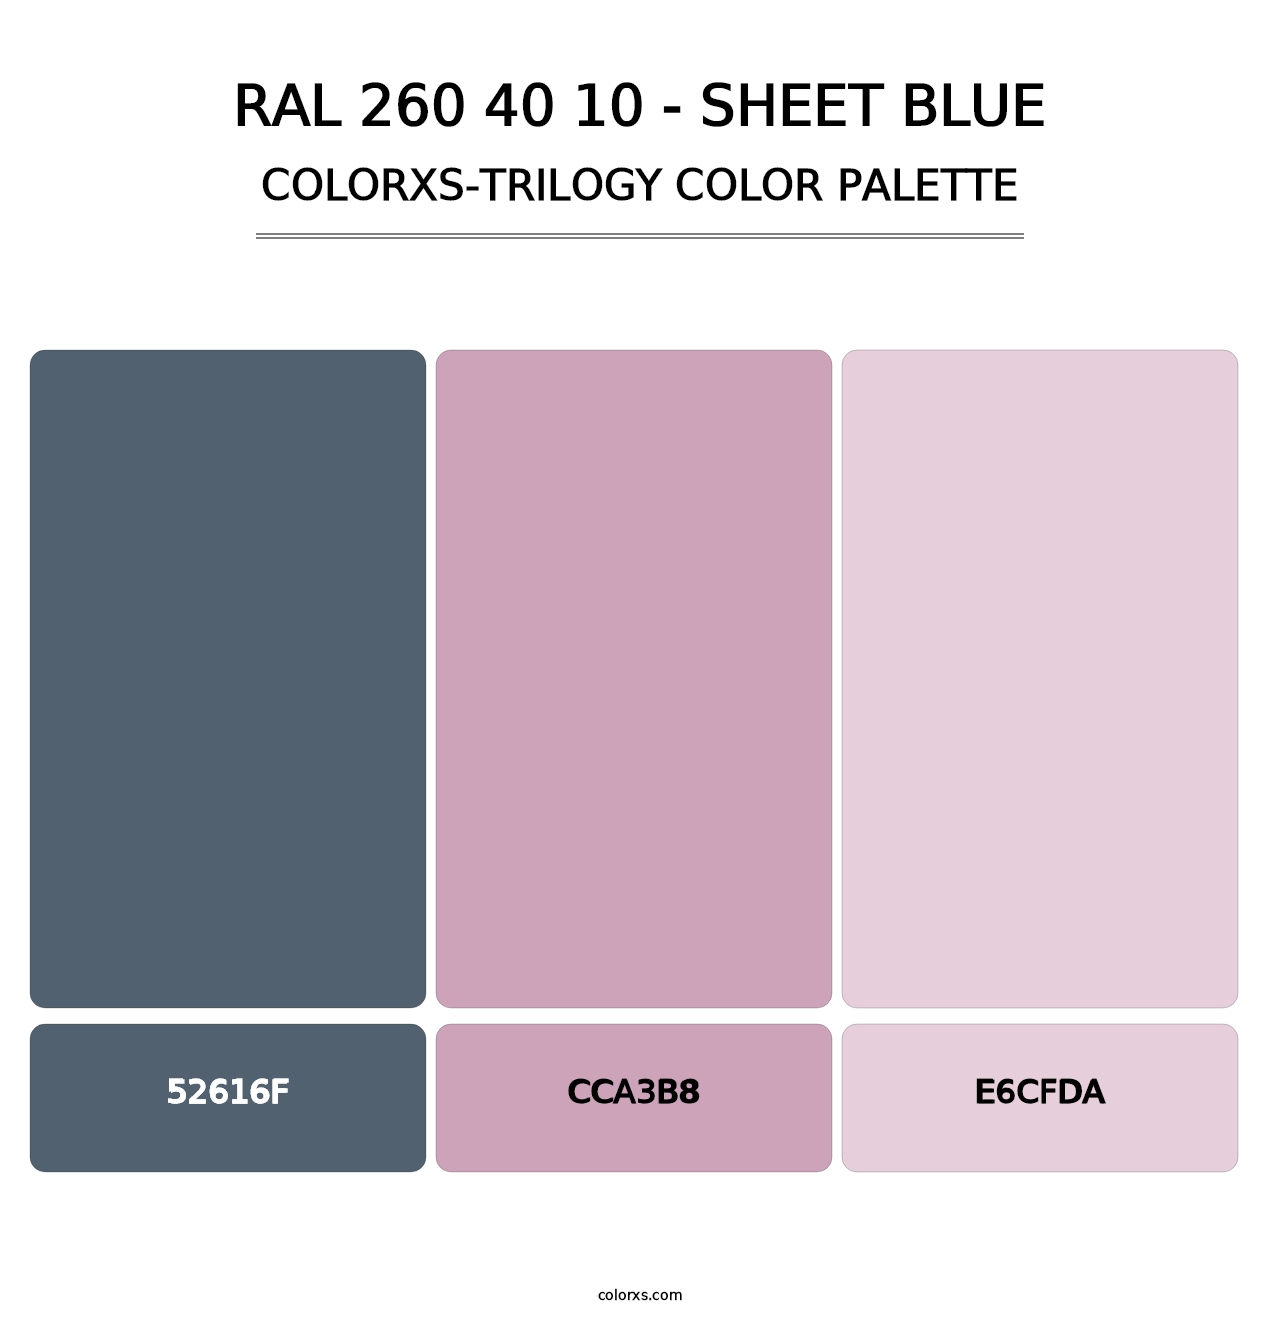 RAL 260 40 10 - Sheet Blue - Colorxs Trilogy Palette